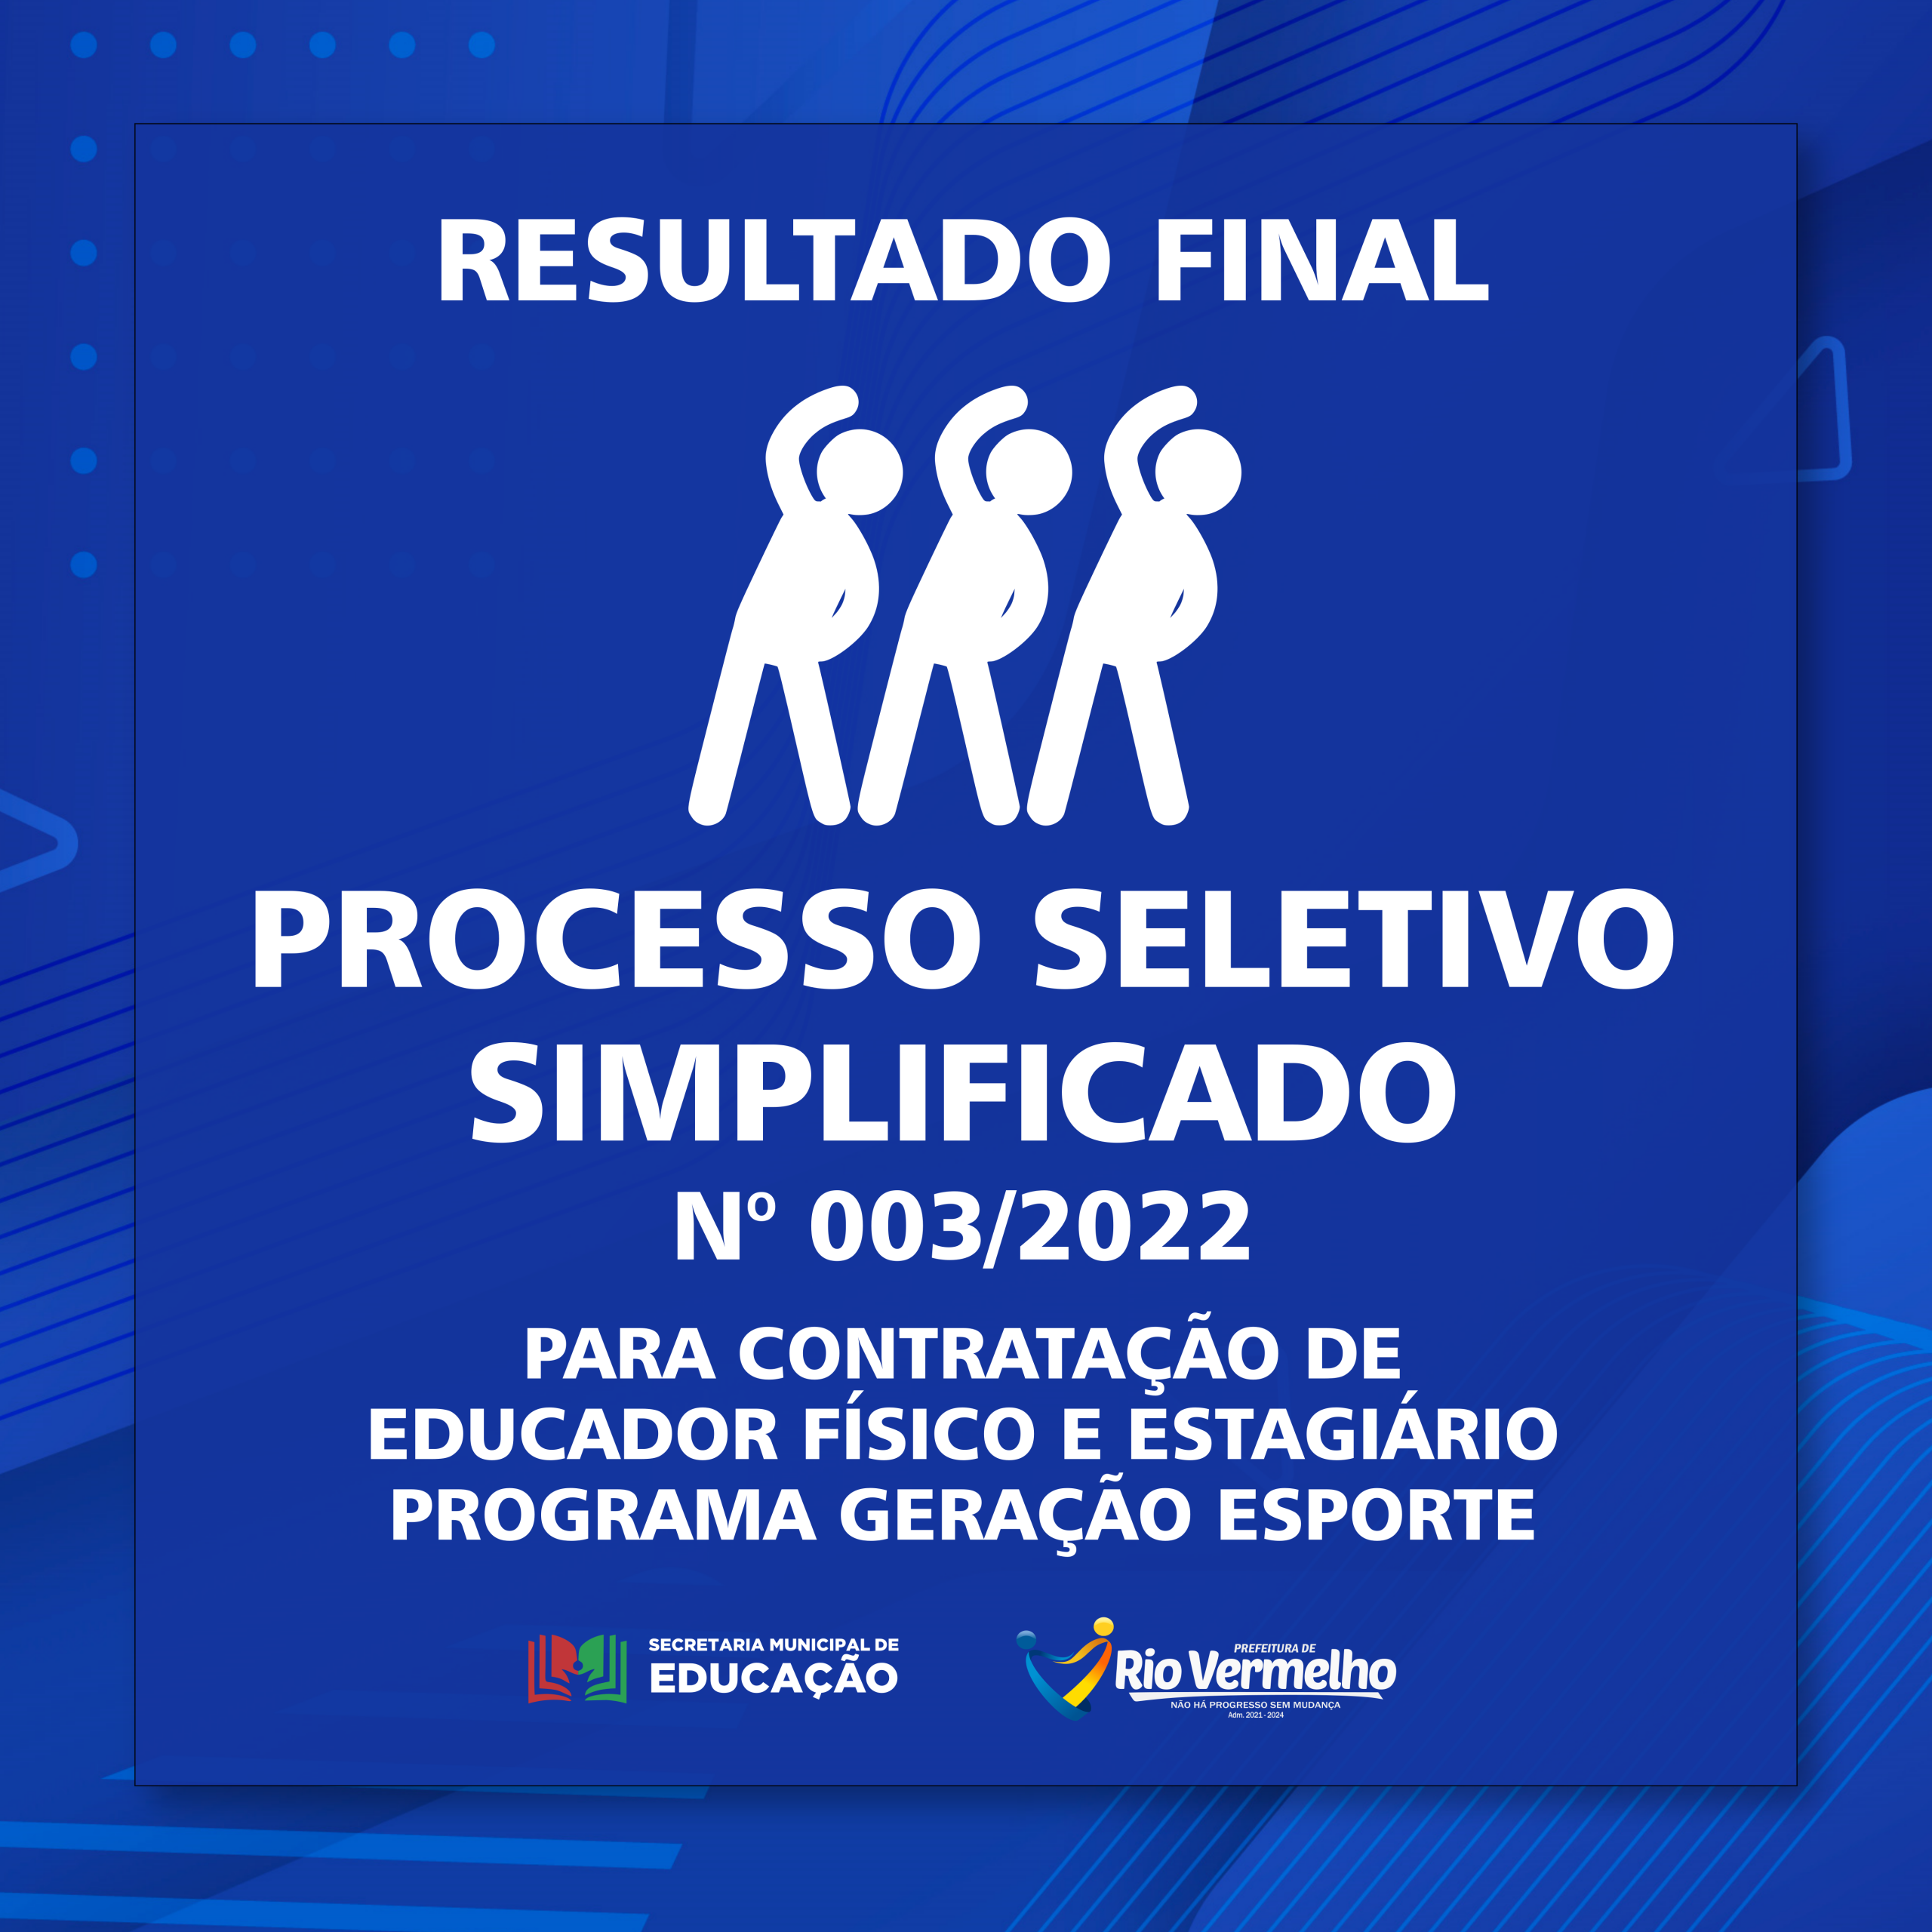 You are currently viewing RESULTADO FINAL DO PROCESSO SELETIVO SIMPLIFICADO EDITAL Nº 003/2022 – SECRETARIA MUNICIPAL DE EDUCAÇÃO